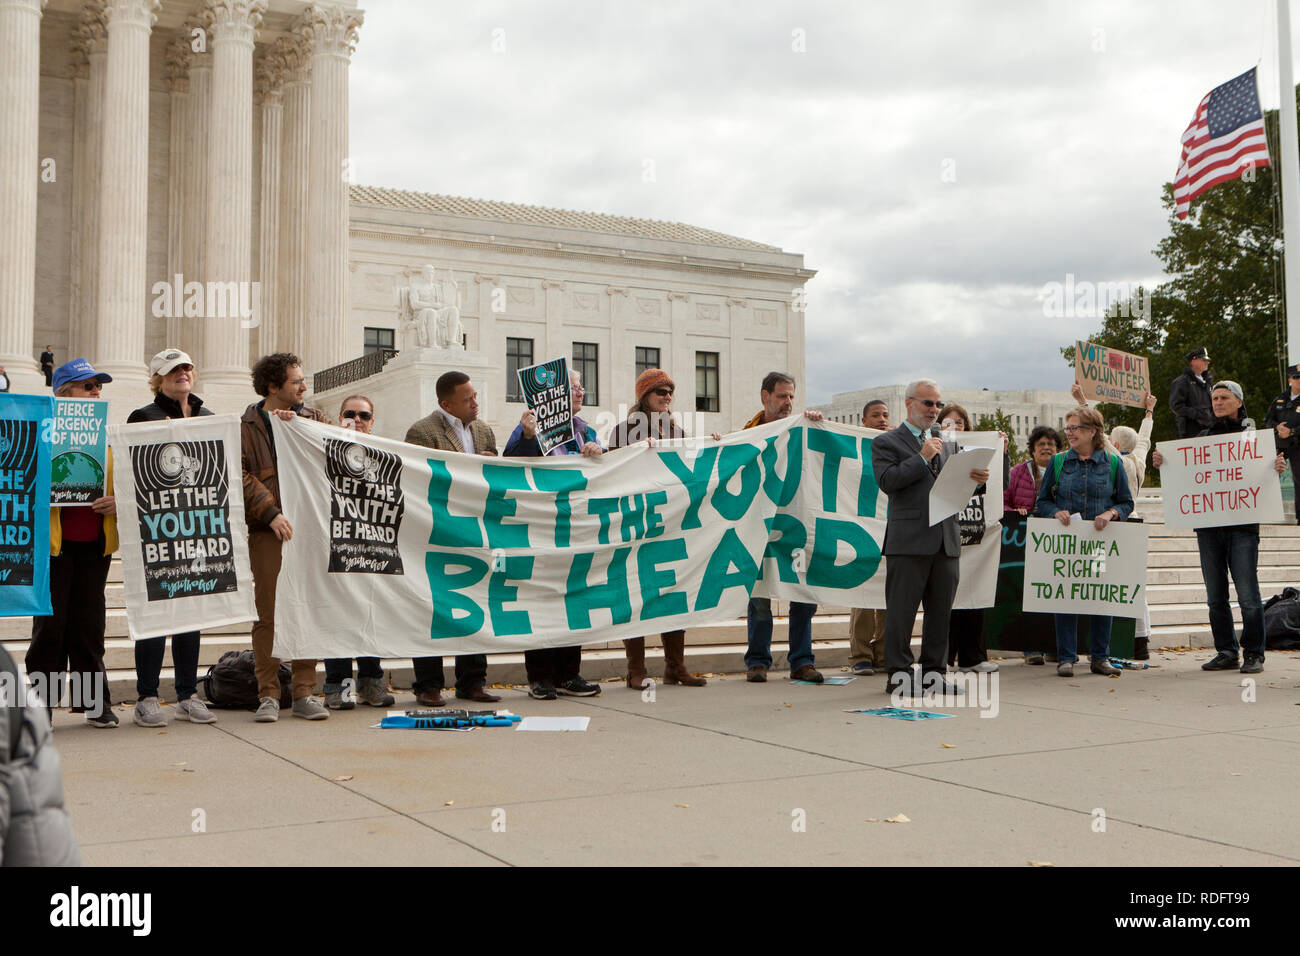 El 10 de septiembre, 2018, Washington DC: Protesta de manifestantes frente al edificio de la Corte Suprema de Estados Unidos en apoyo de "dejar a los jóvenes ser escuchados" movimiento Foto de stock